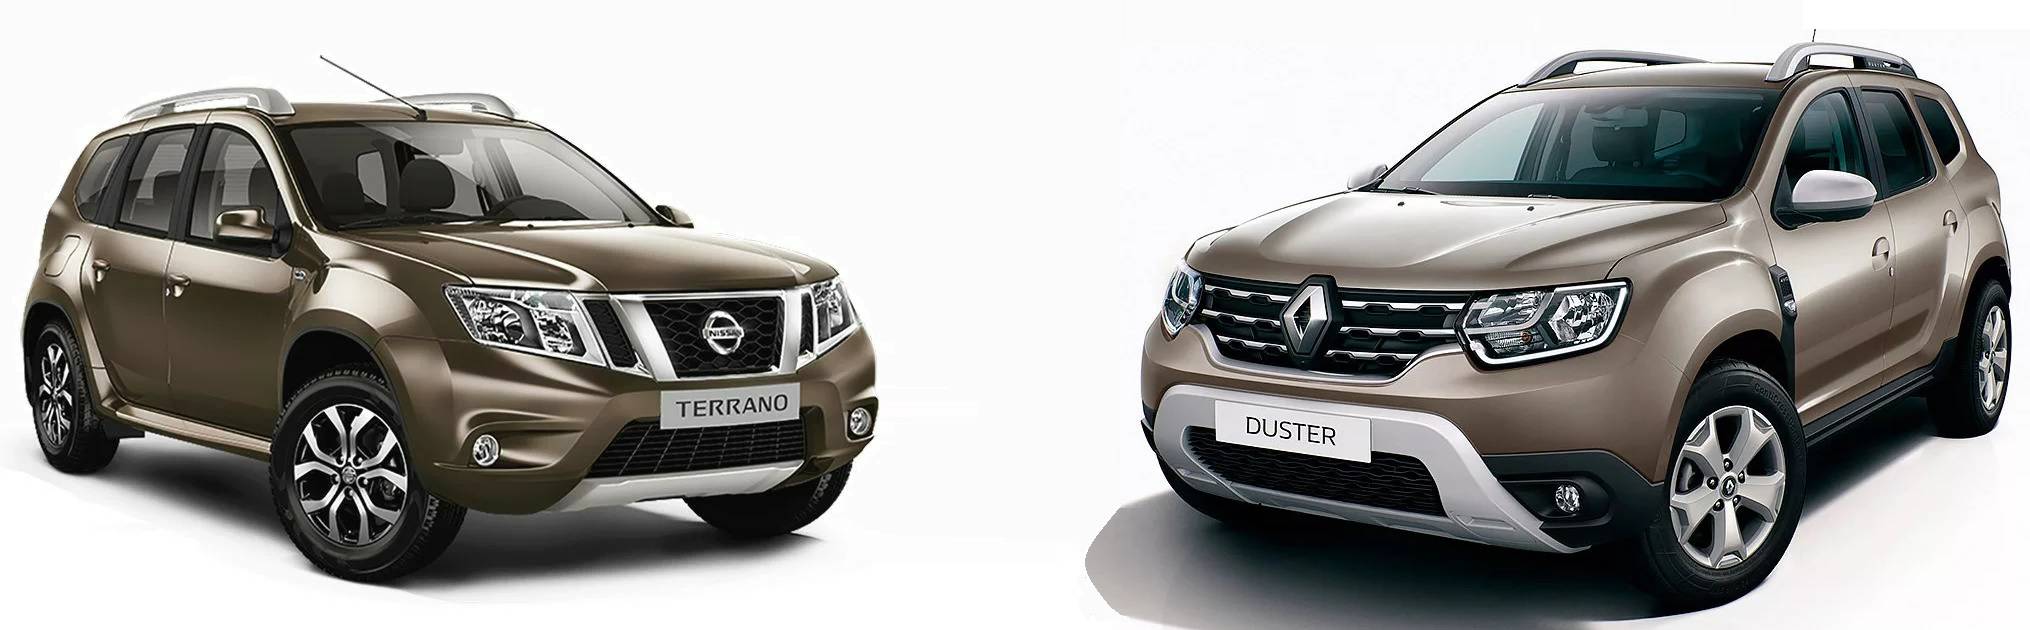 Renault duster и nissan terrano - родные братья или конкуренты?